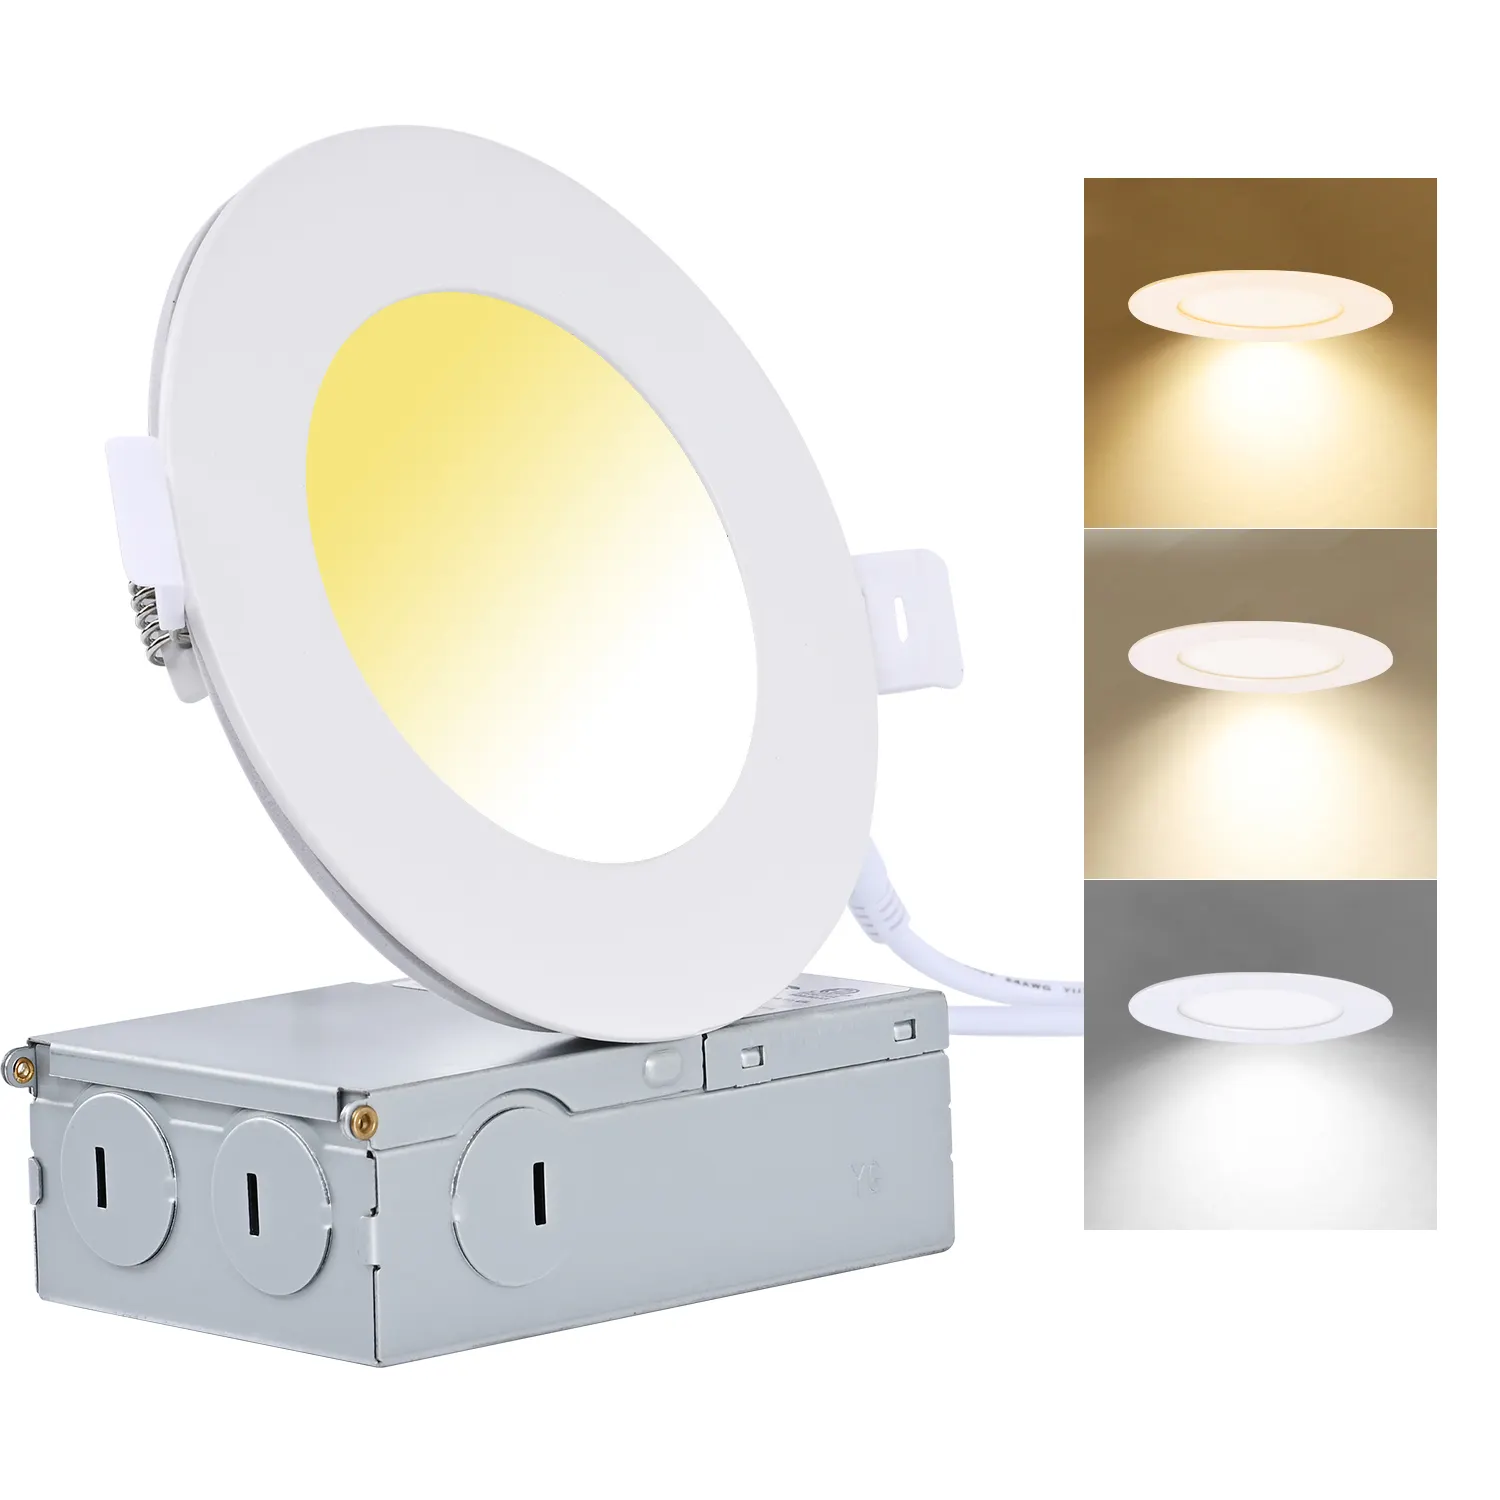 5CCTトライアック調光器ETL承認アルミボディジャンクションボックス付きモダンLED天井パネルライト